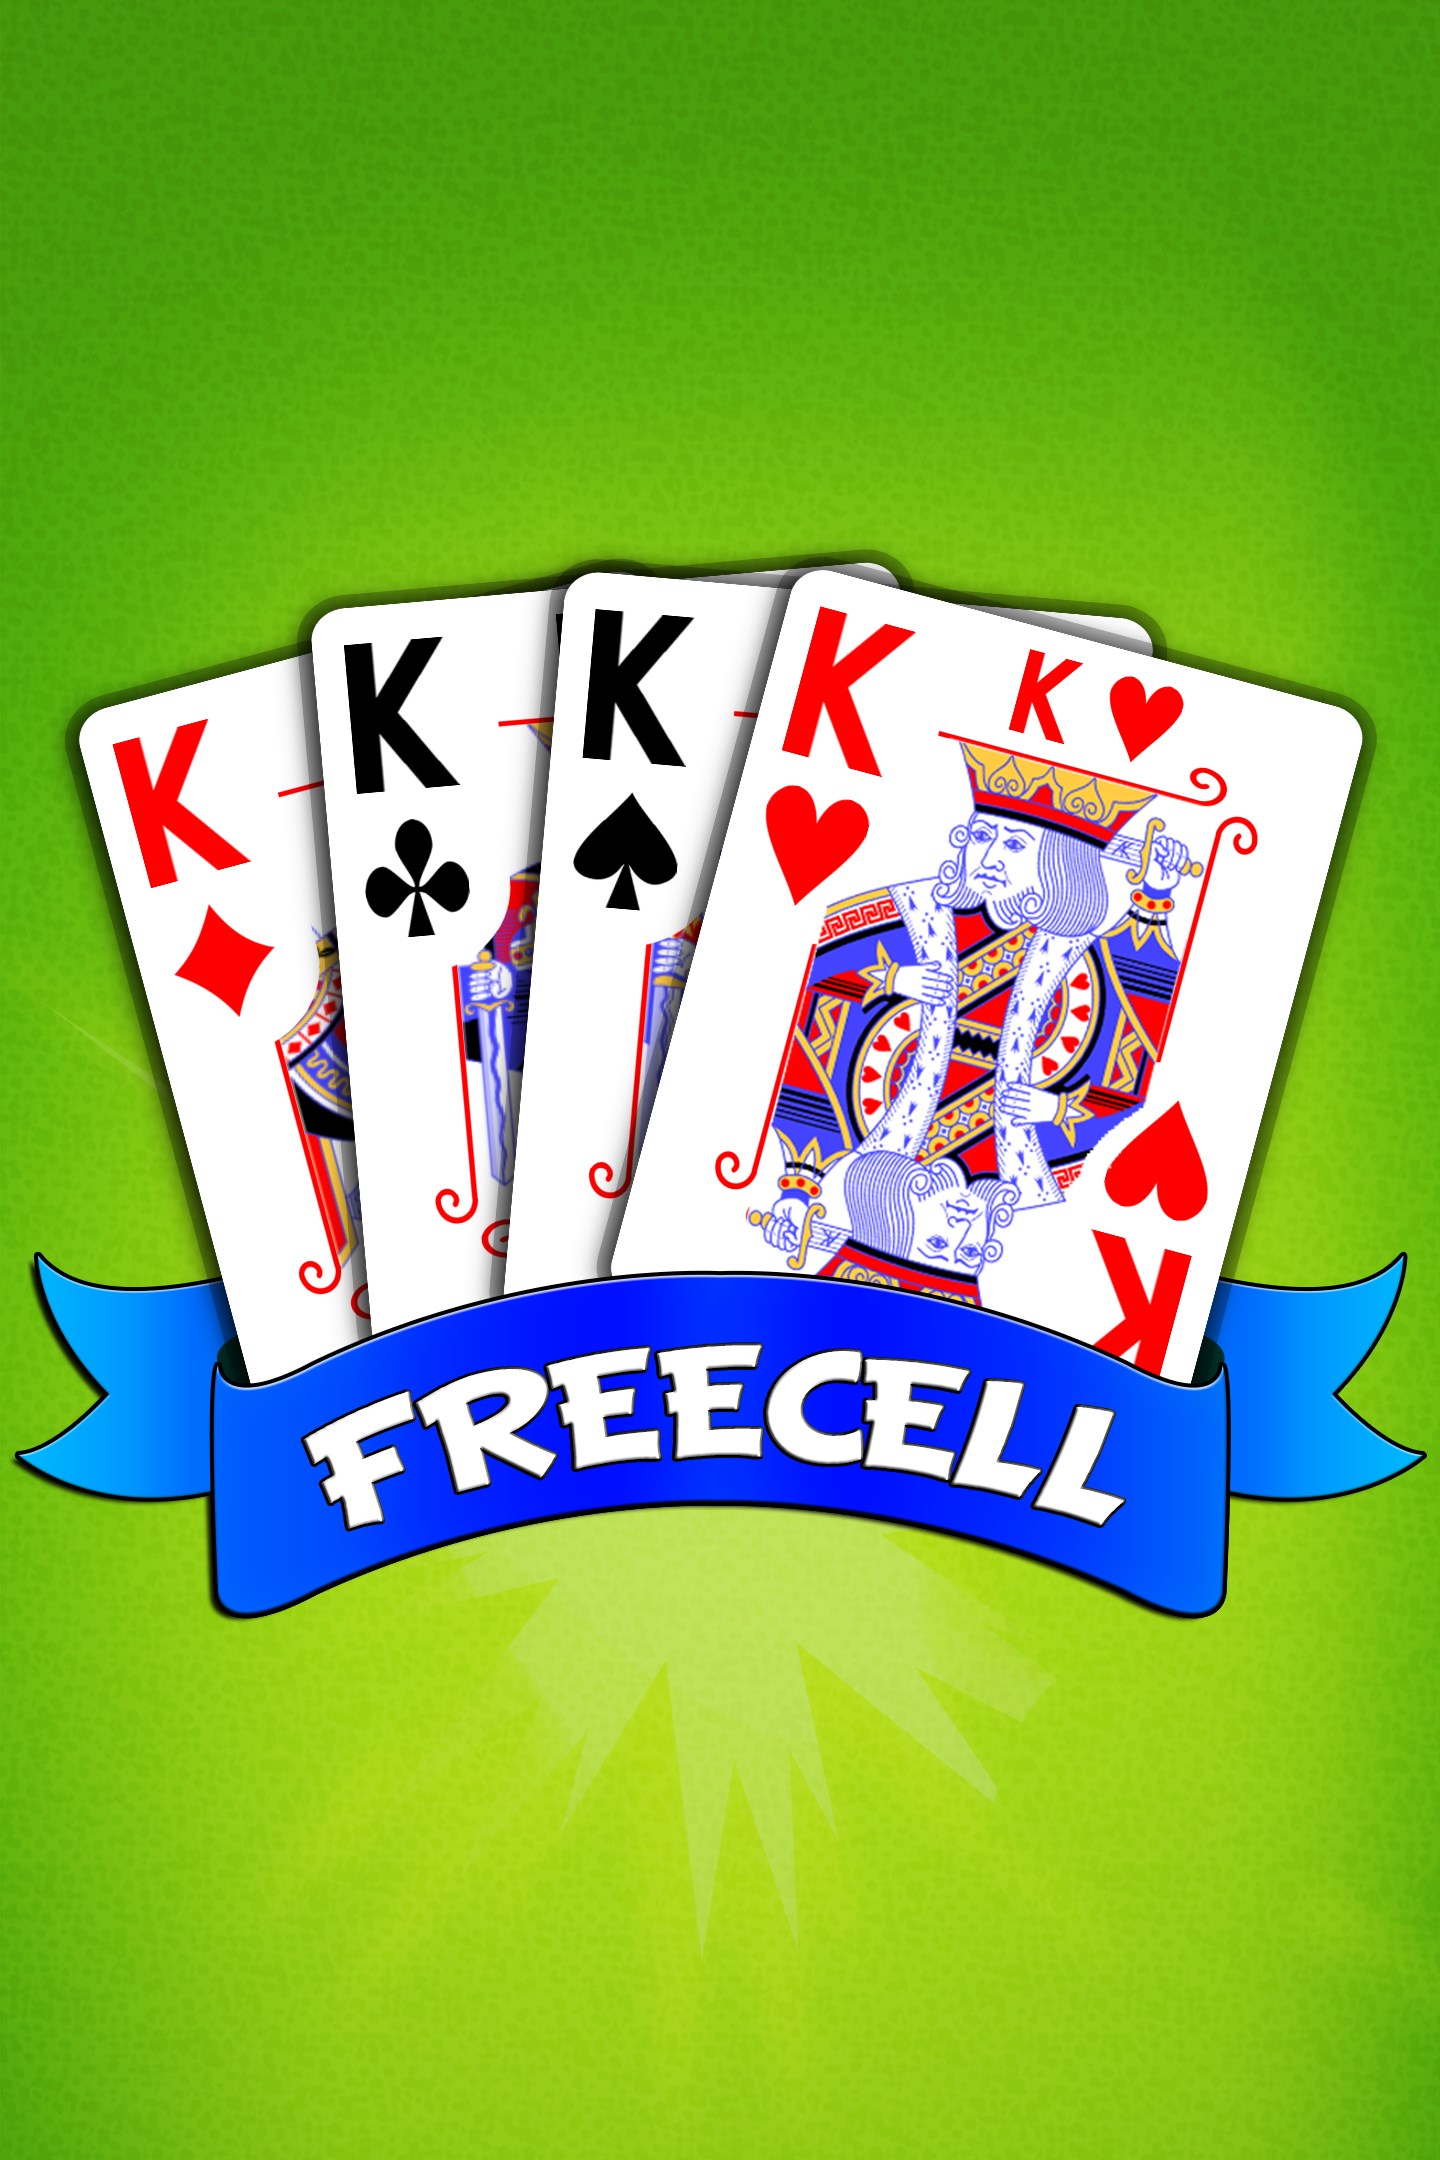 FreeCell em Português - Microsoft Apps